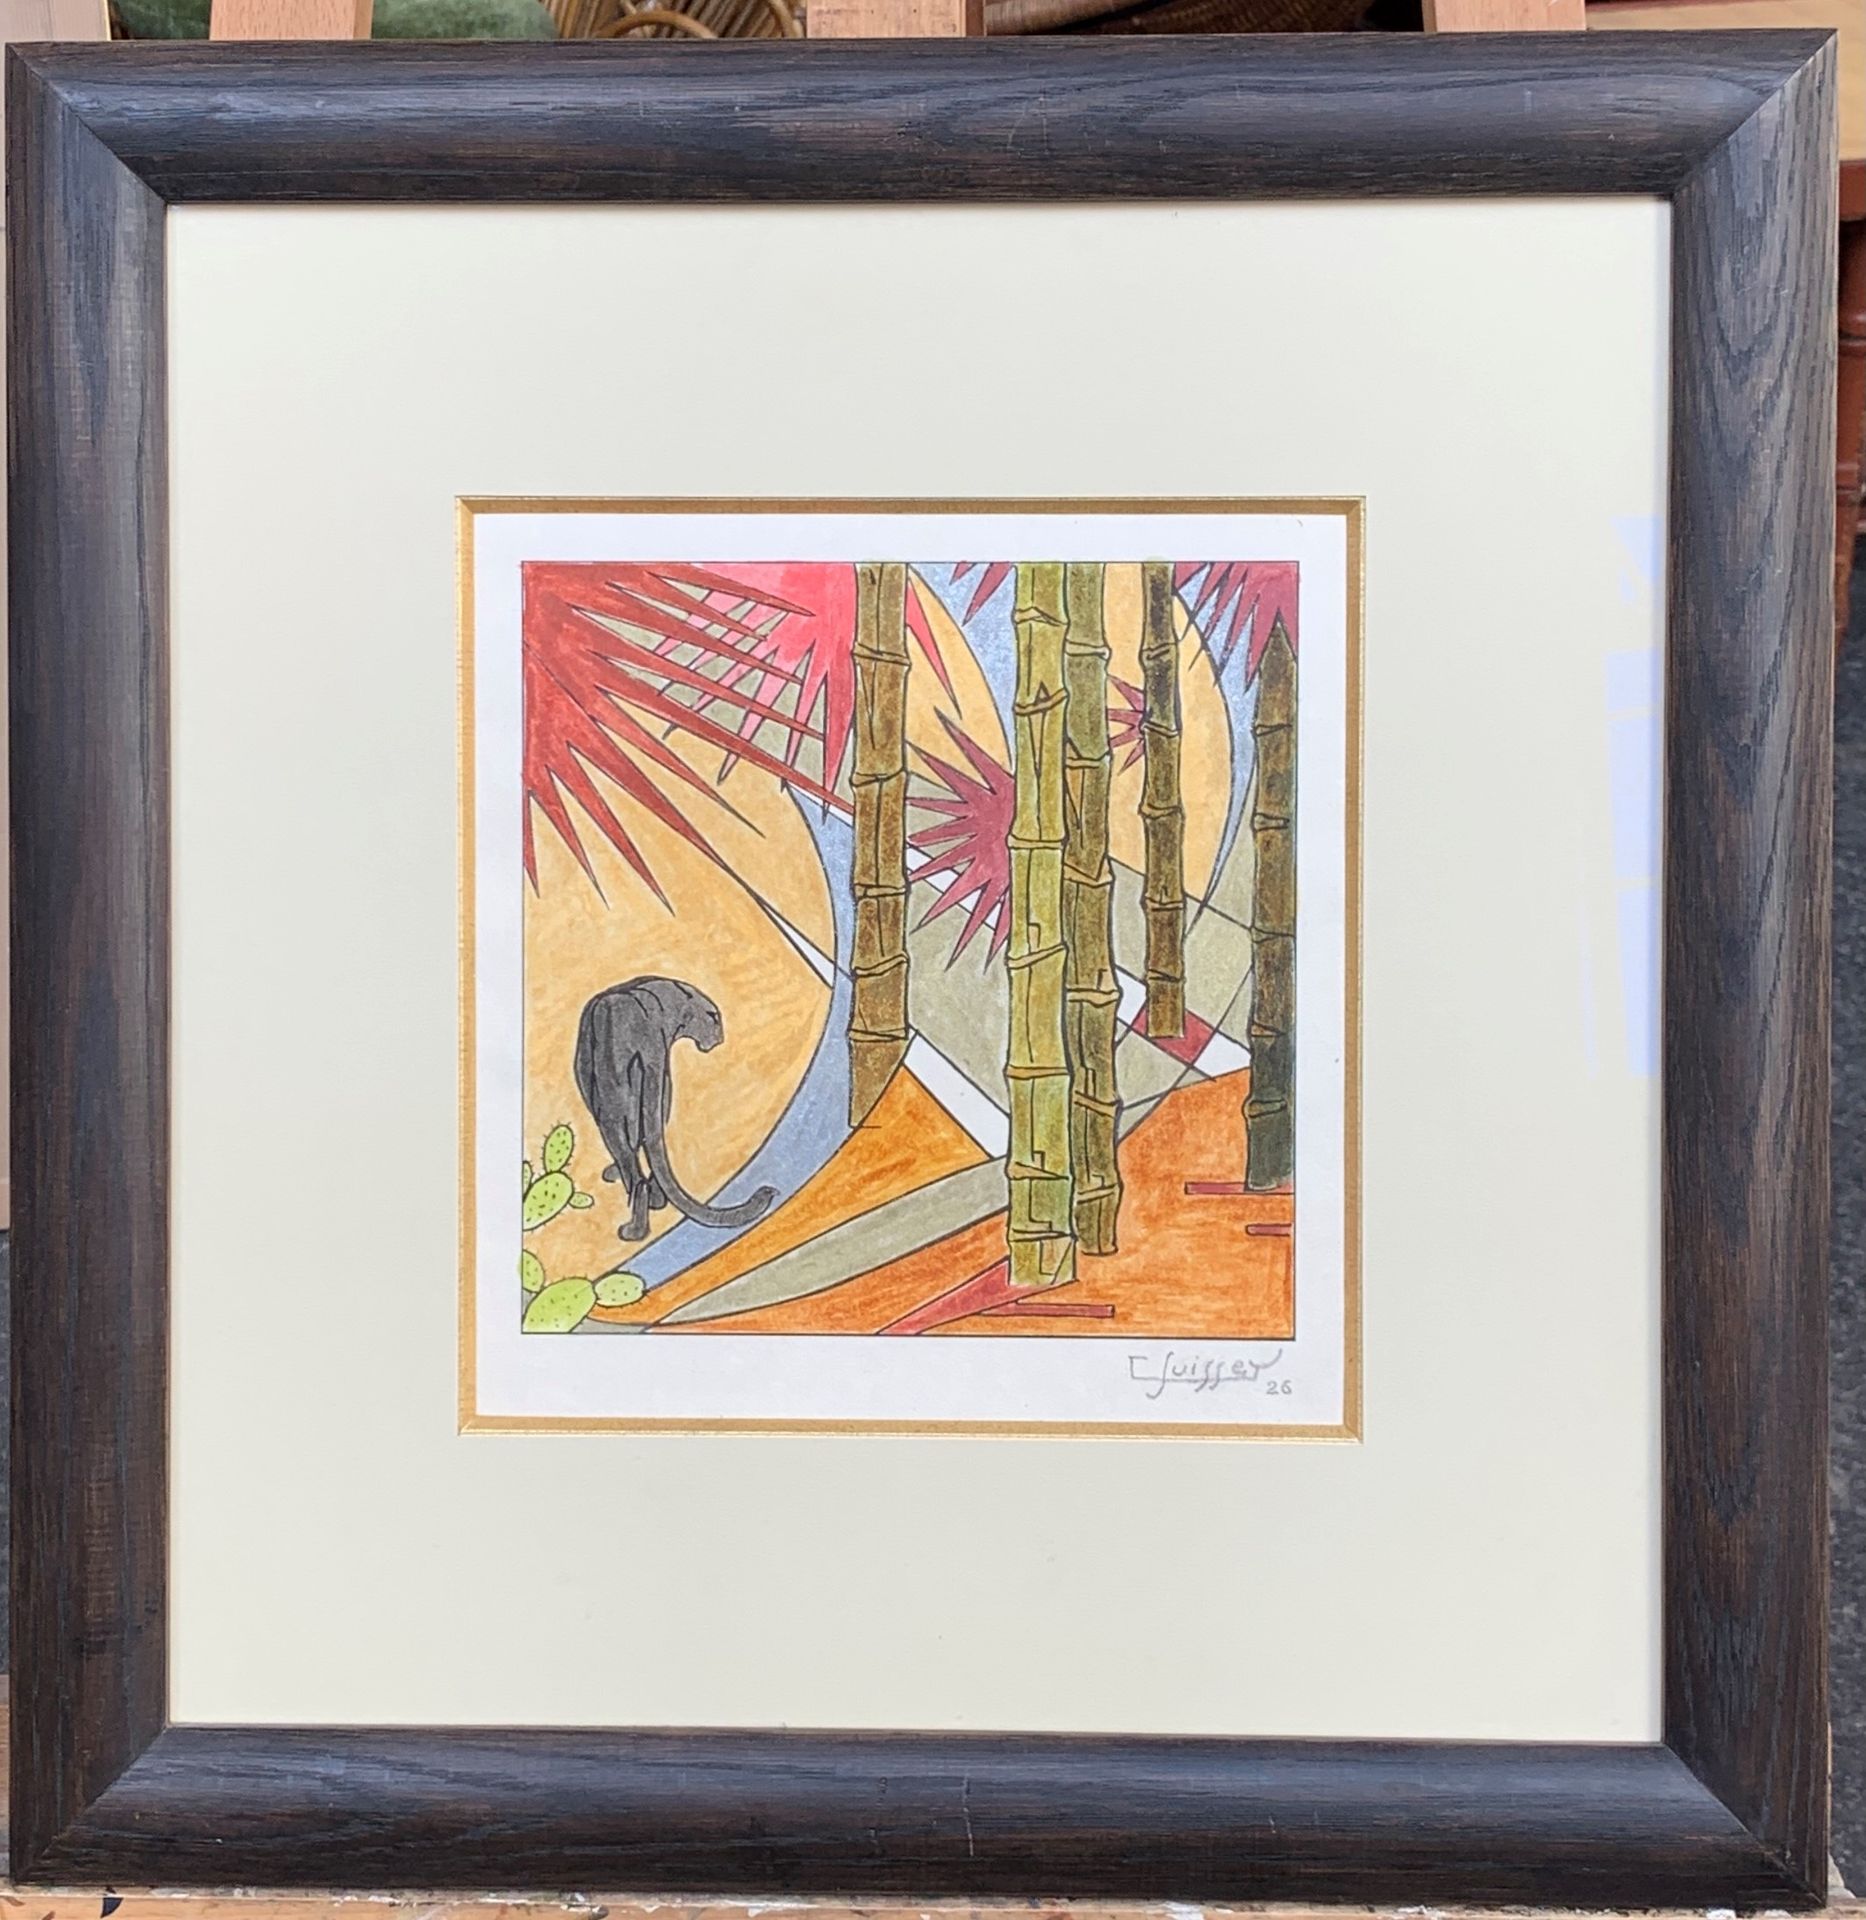 GASTON SUISSE (1896-1988) Panthère noire, 1926

Gravure sur bois, sur papier jap&hellip;